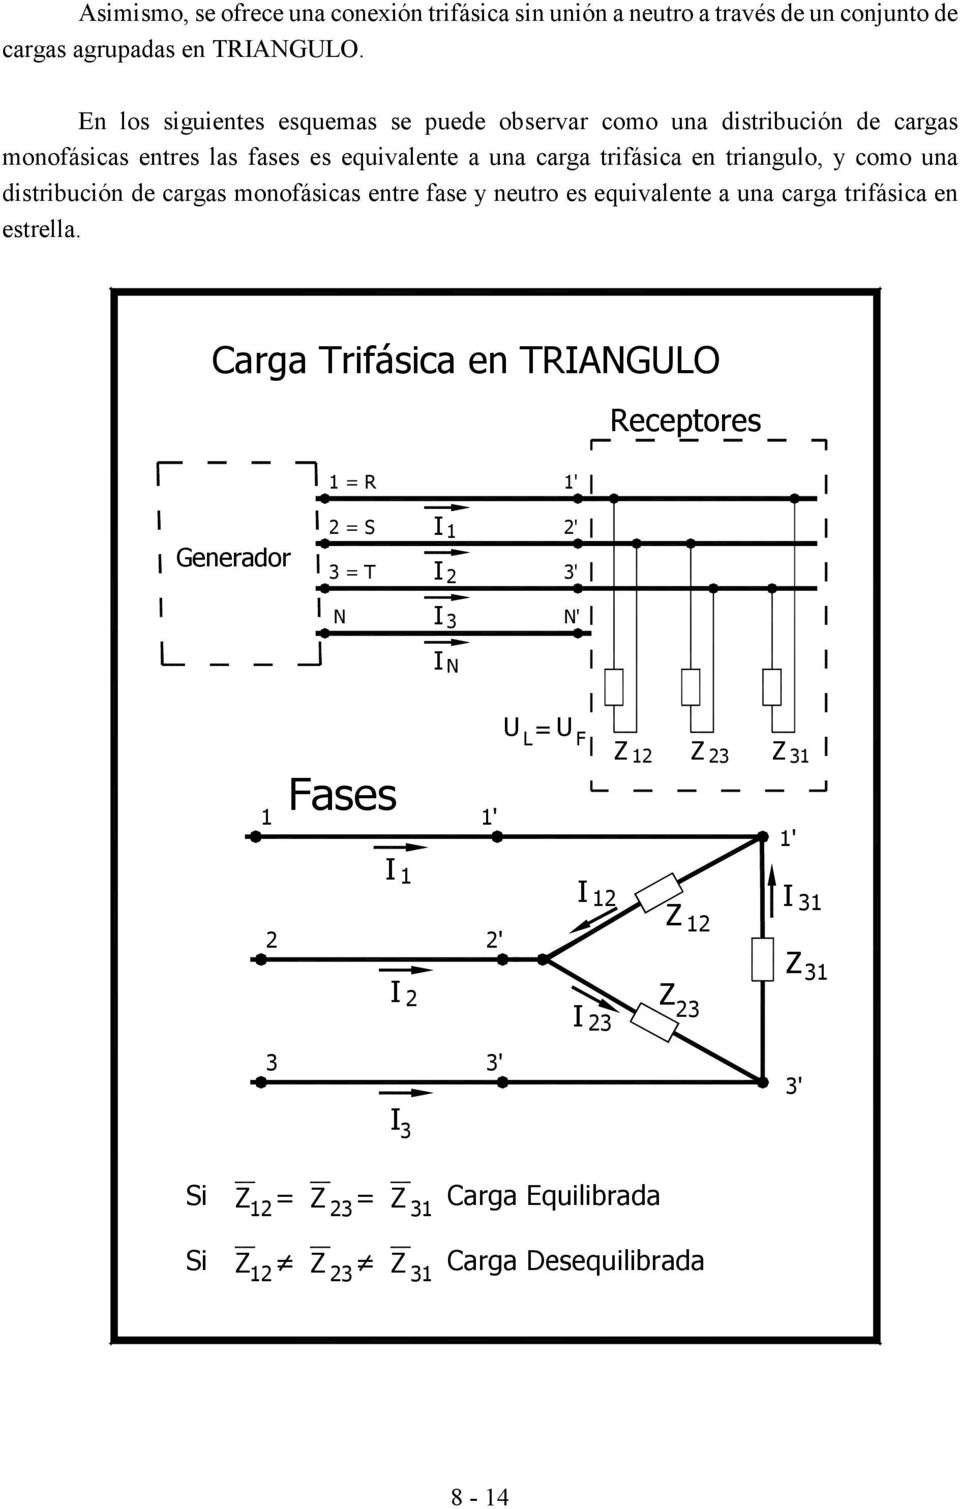 carga trifásica en triangulo, y como una distribución de cargas monofásicas entre fase y neutro es equivalente a una carga